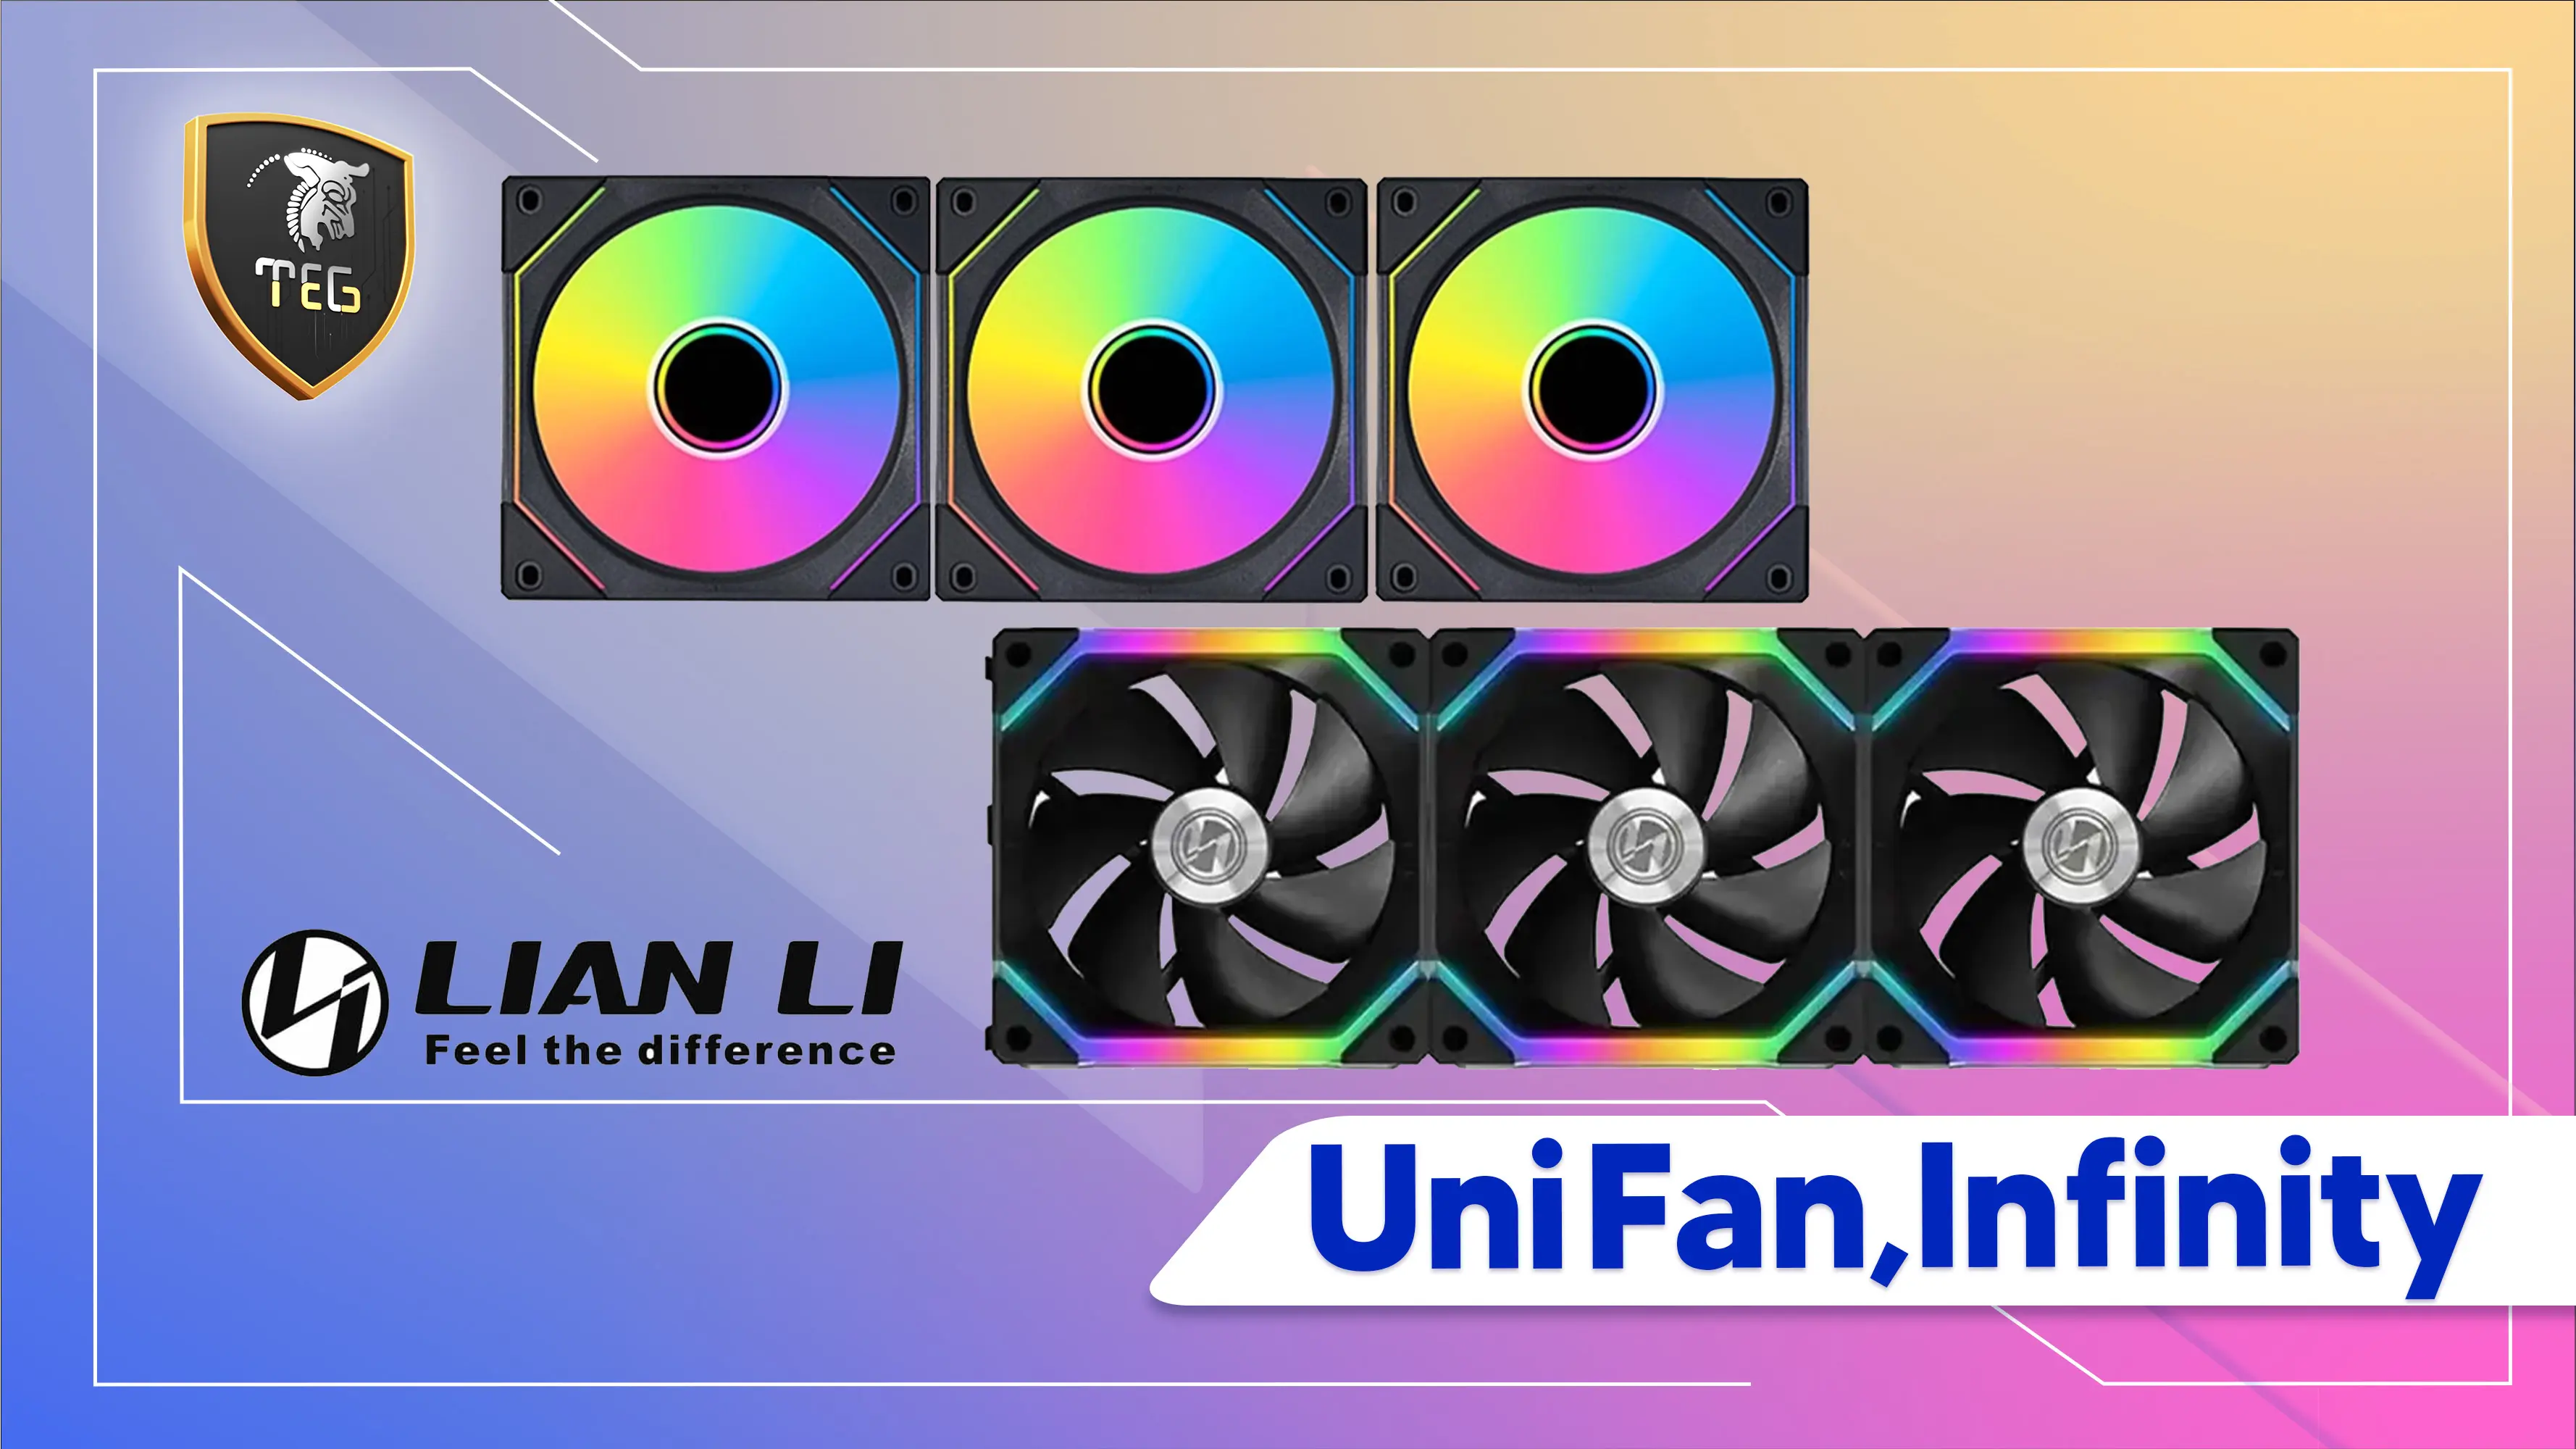 مقایسه فن کیس لیان لی مدل های UNI FAN SL V2 و UNI Fan SL INFINITY